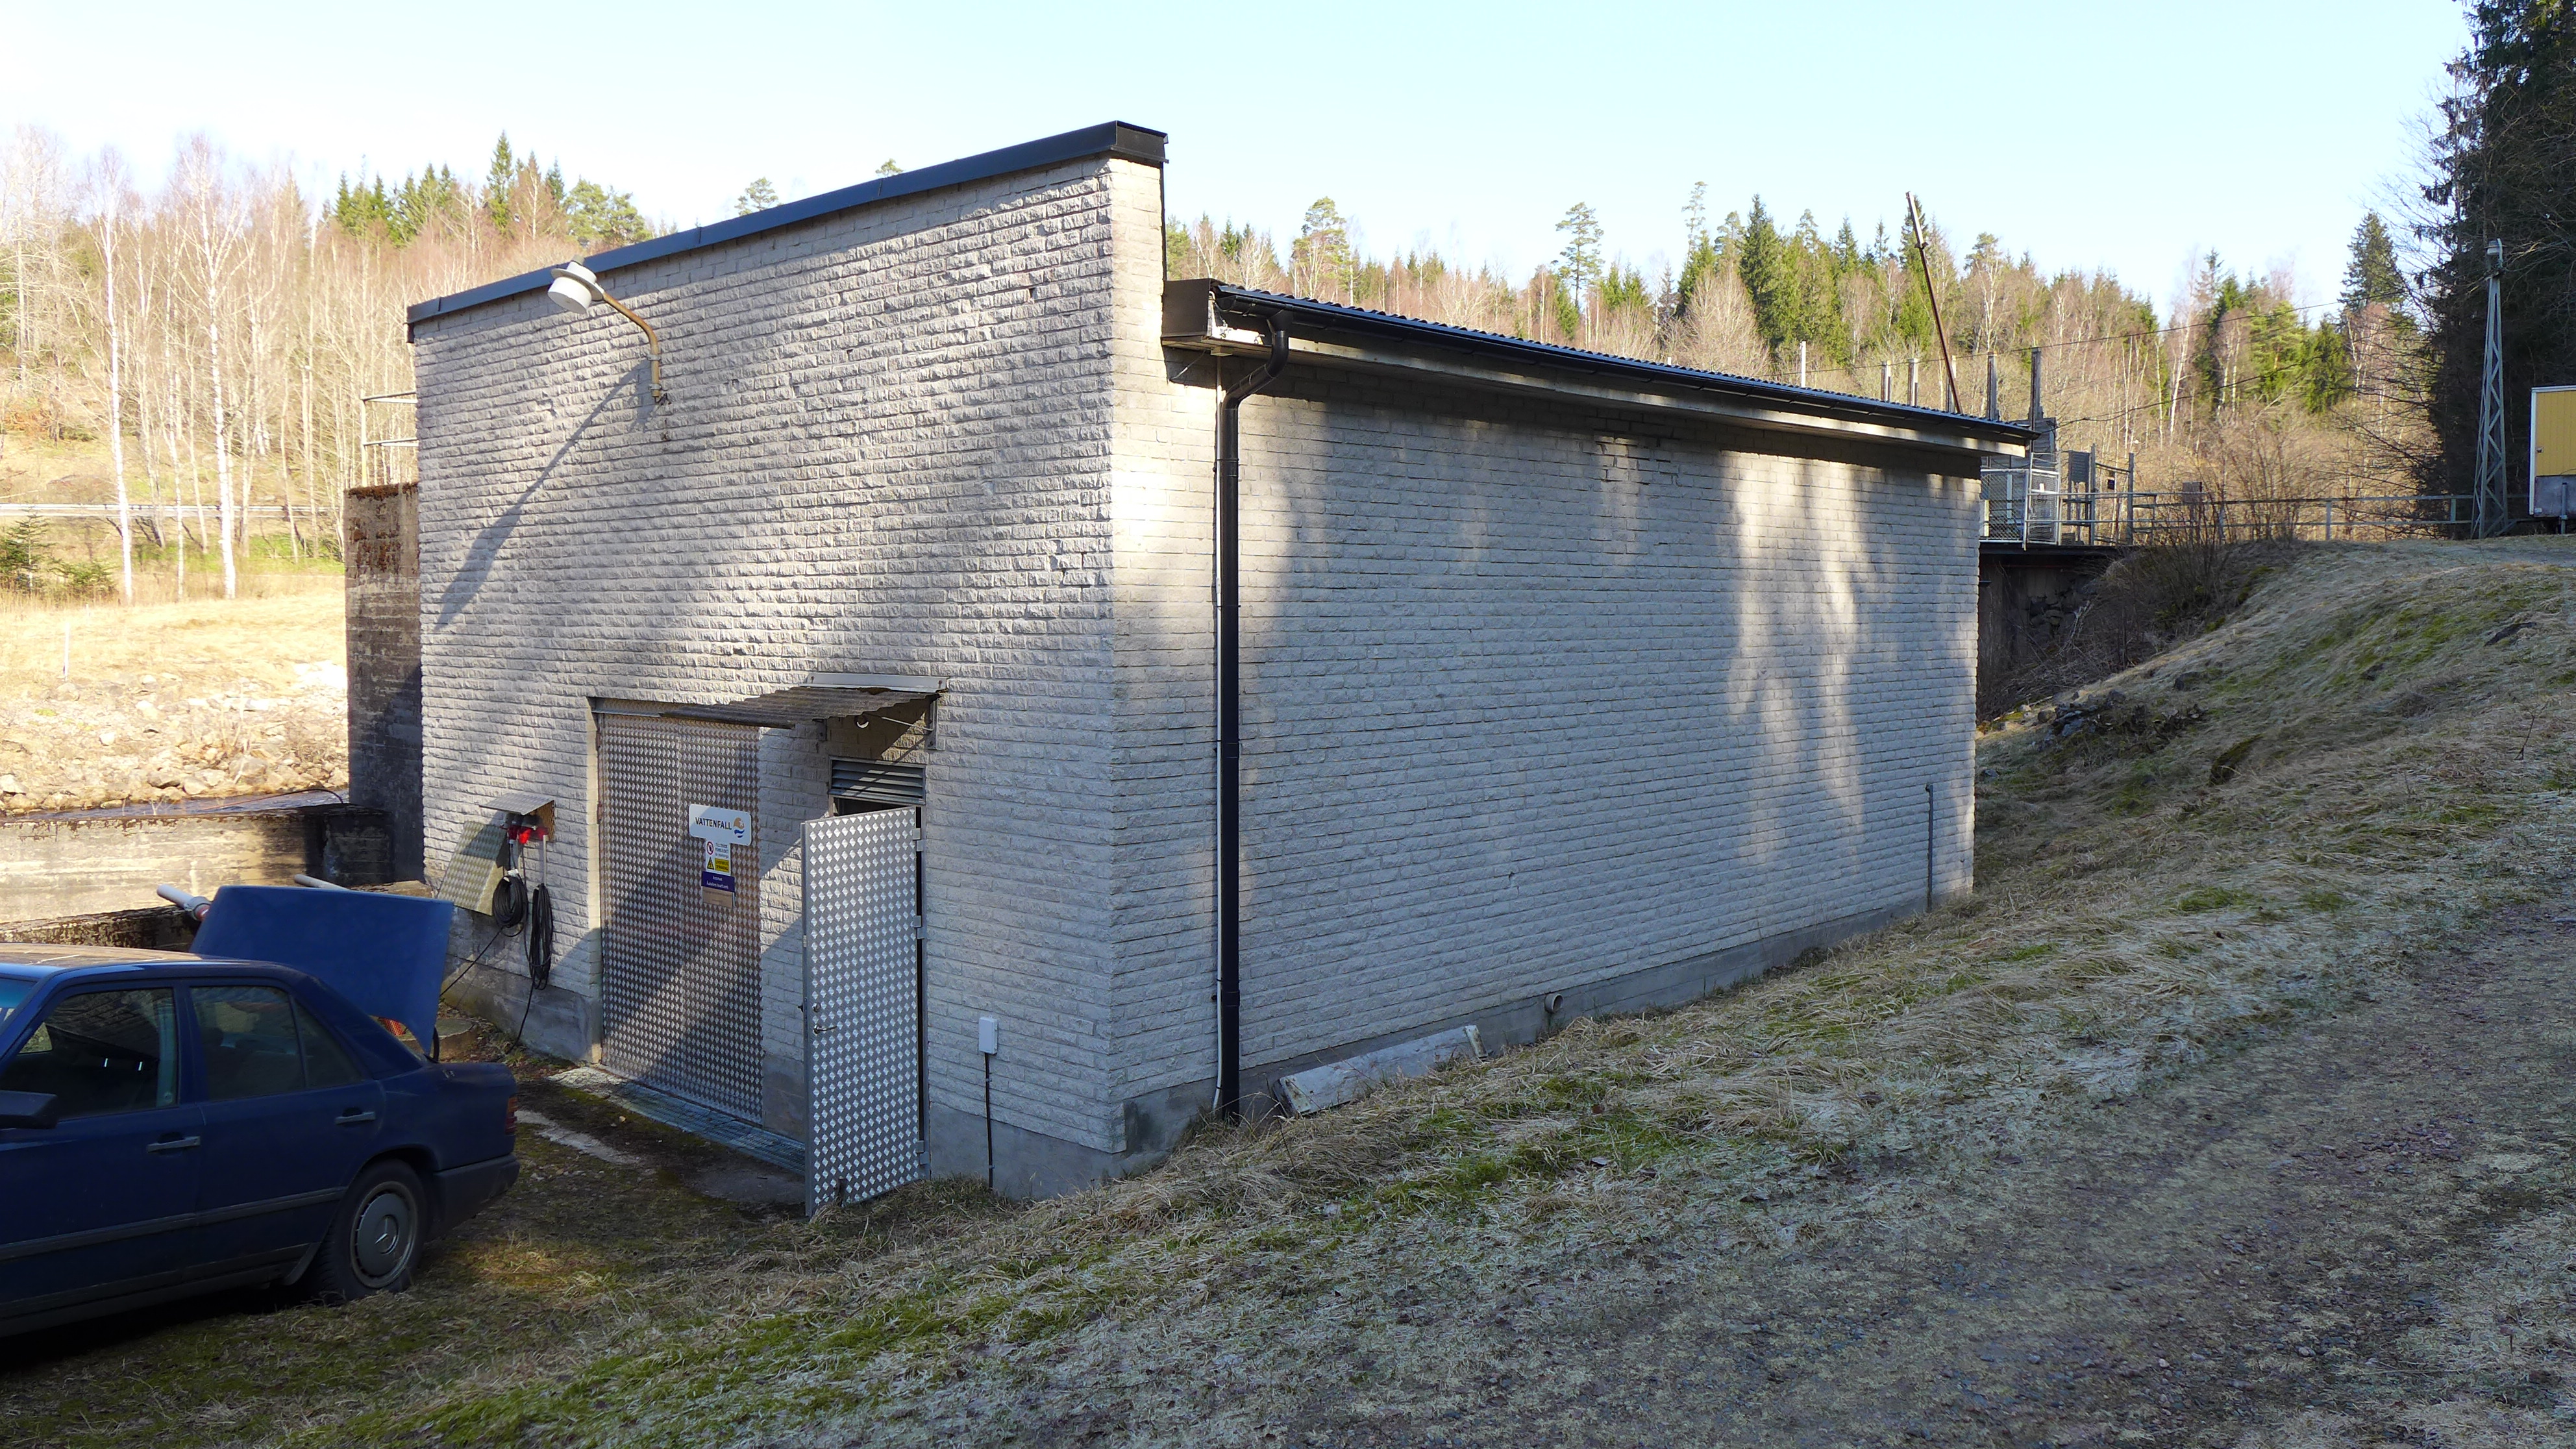 Åstafors kraftverk ligger utmed ån Assman knappt 7 km sydost om Svenljunga samhälle. Fasaden är täckt av rundhuggen mexisten och dörrarna består av aluminiumdurkplåt. 